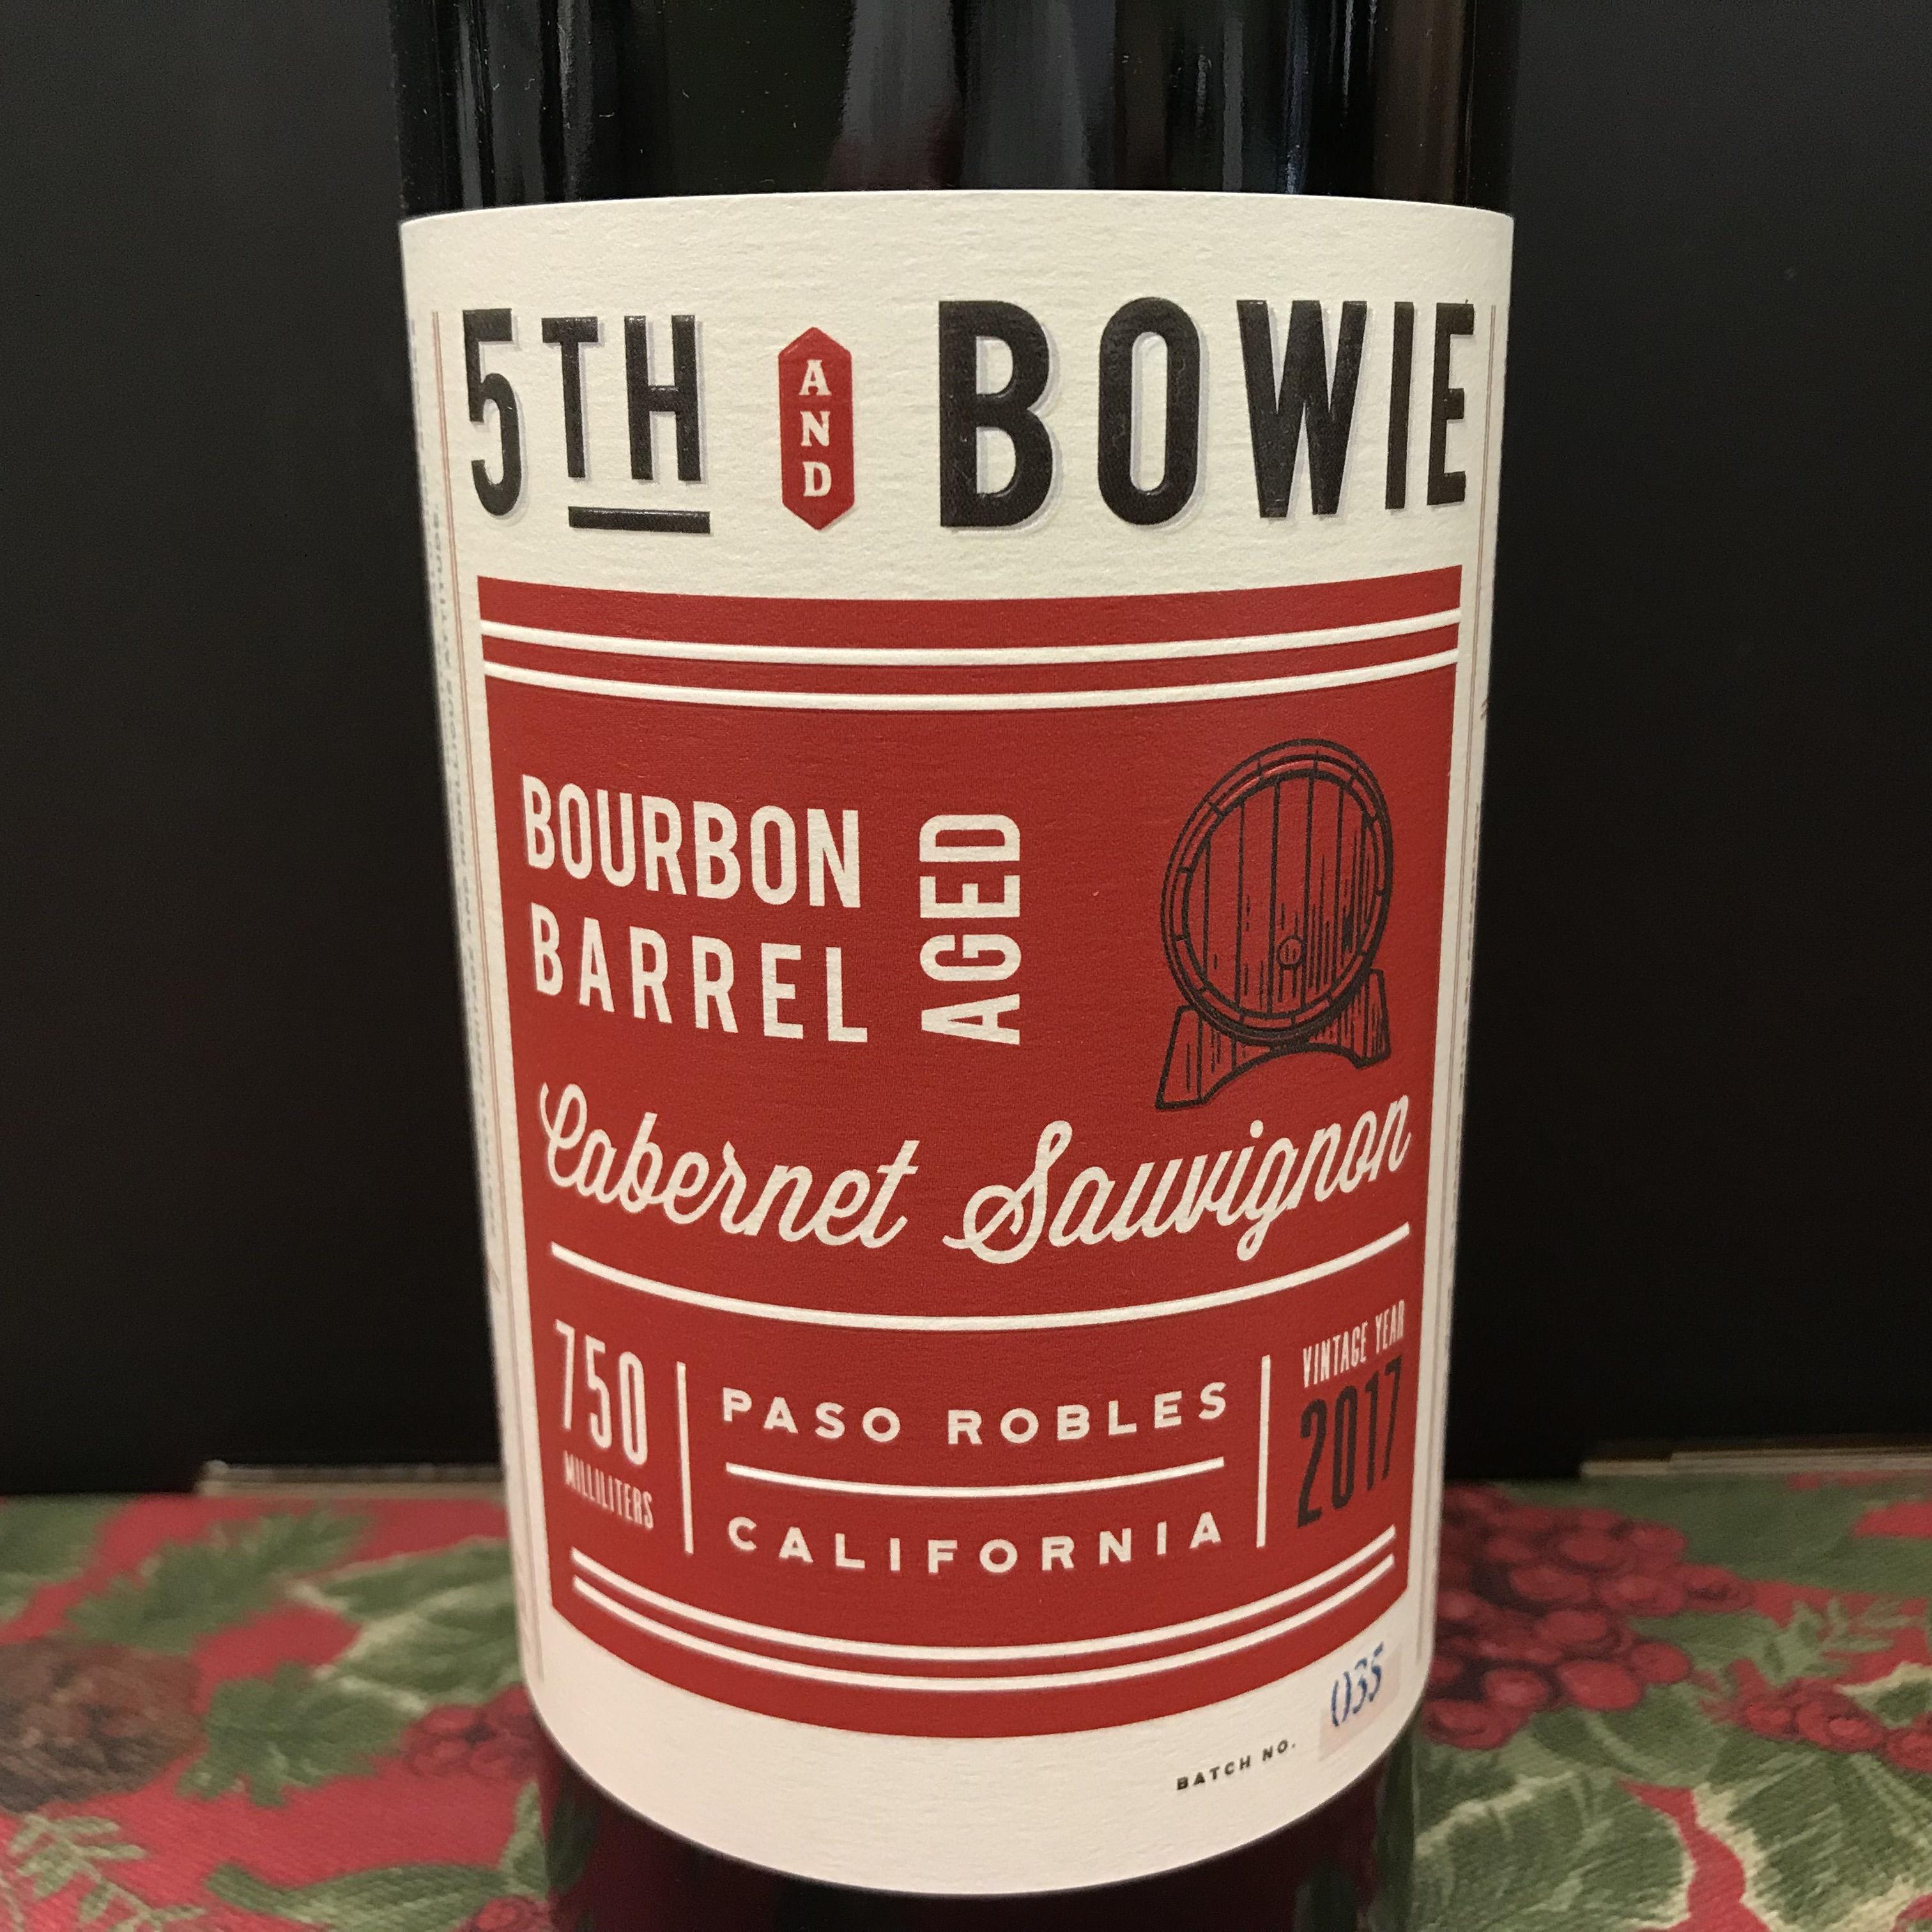 5th & Bowie Bourbon Barrel aged Cabernet Sauvignon 2019